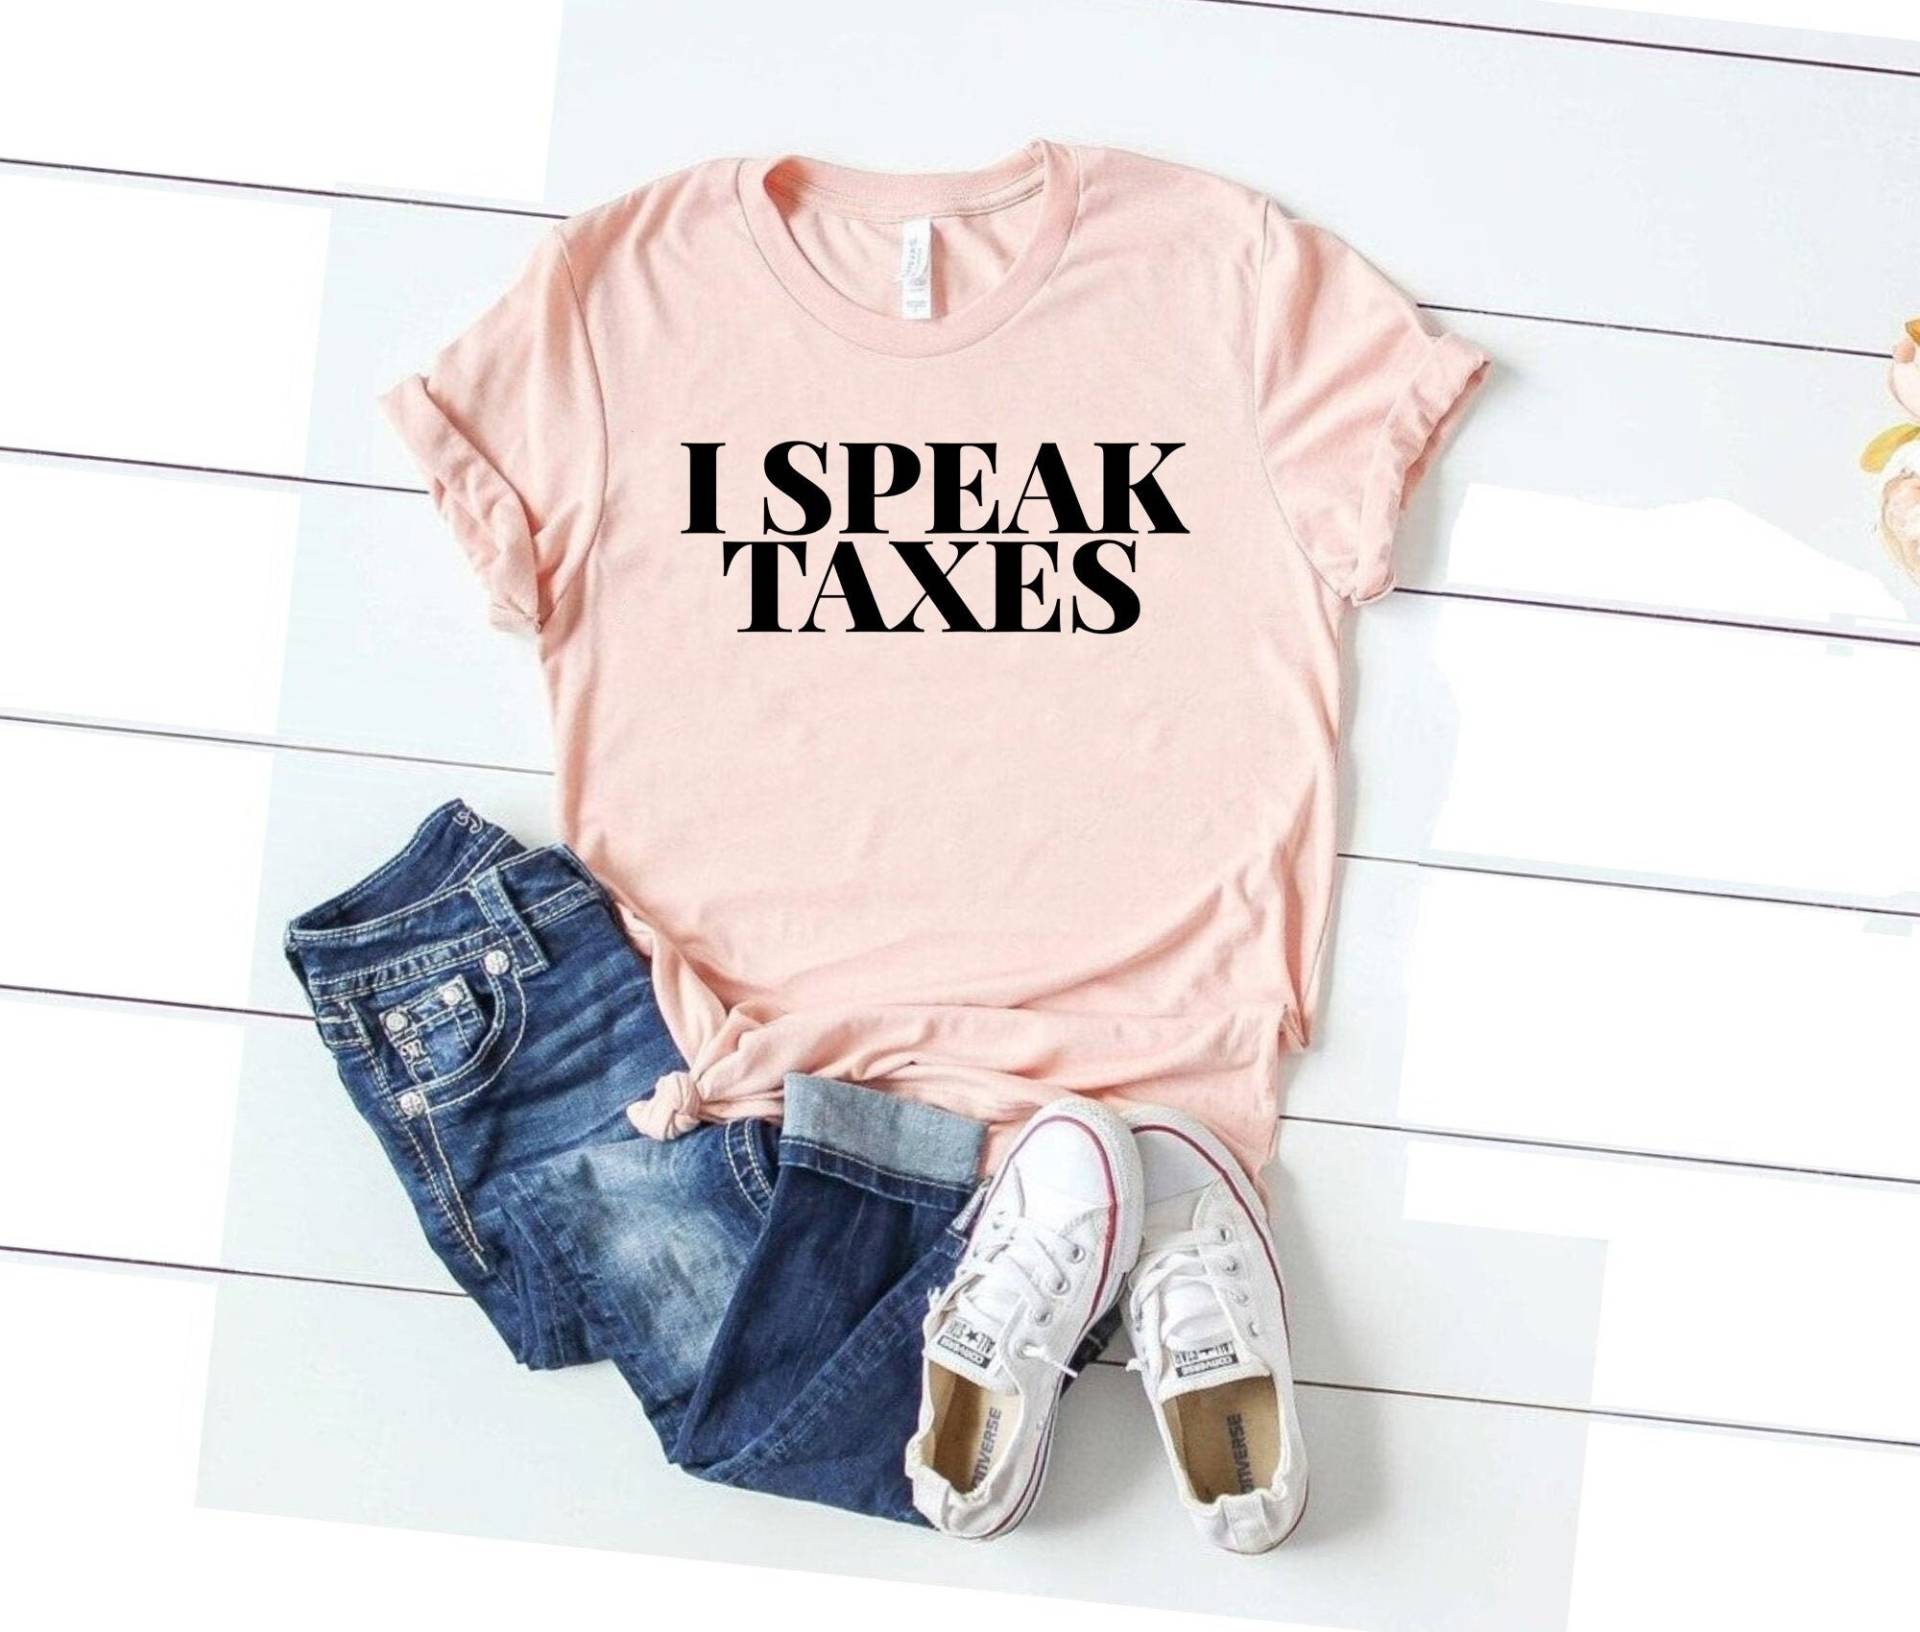 Cpa Shirt, Spreche Steuern, Lustiges Cpa Accounting Tshirt, Geschenk Für Accountant, Steuer I Steuern Shirt von SimplyTraded